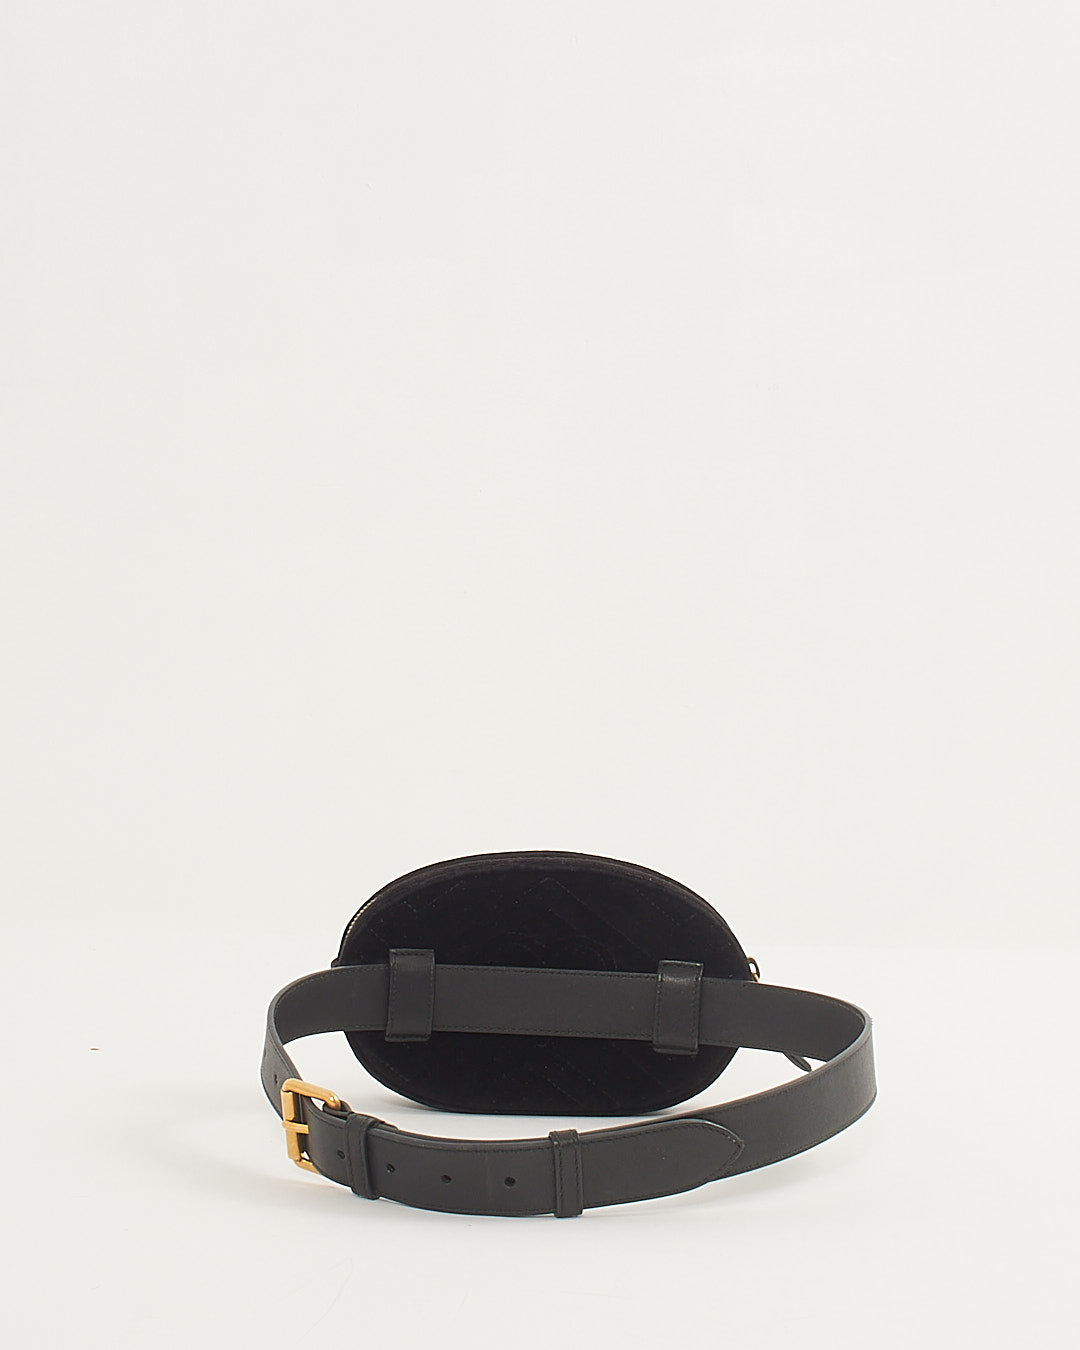 Gucci Velvet Matelasse GG Marmont Belt Bag - 75/30